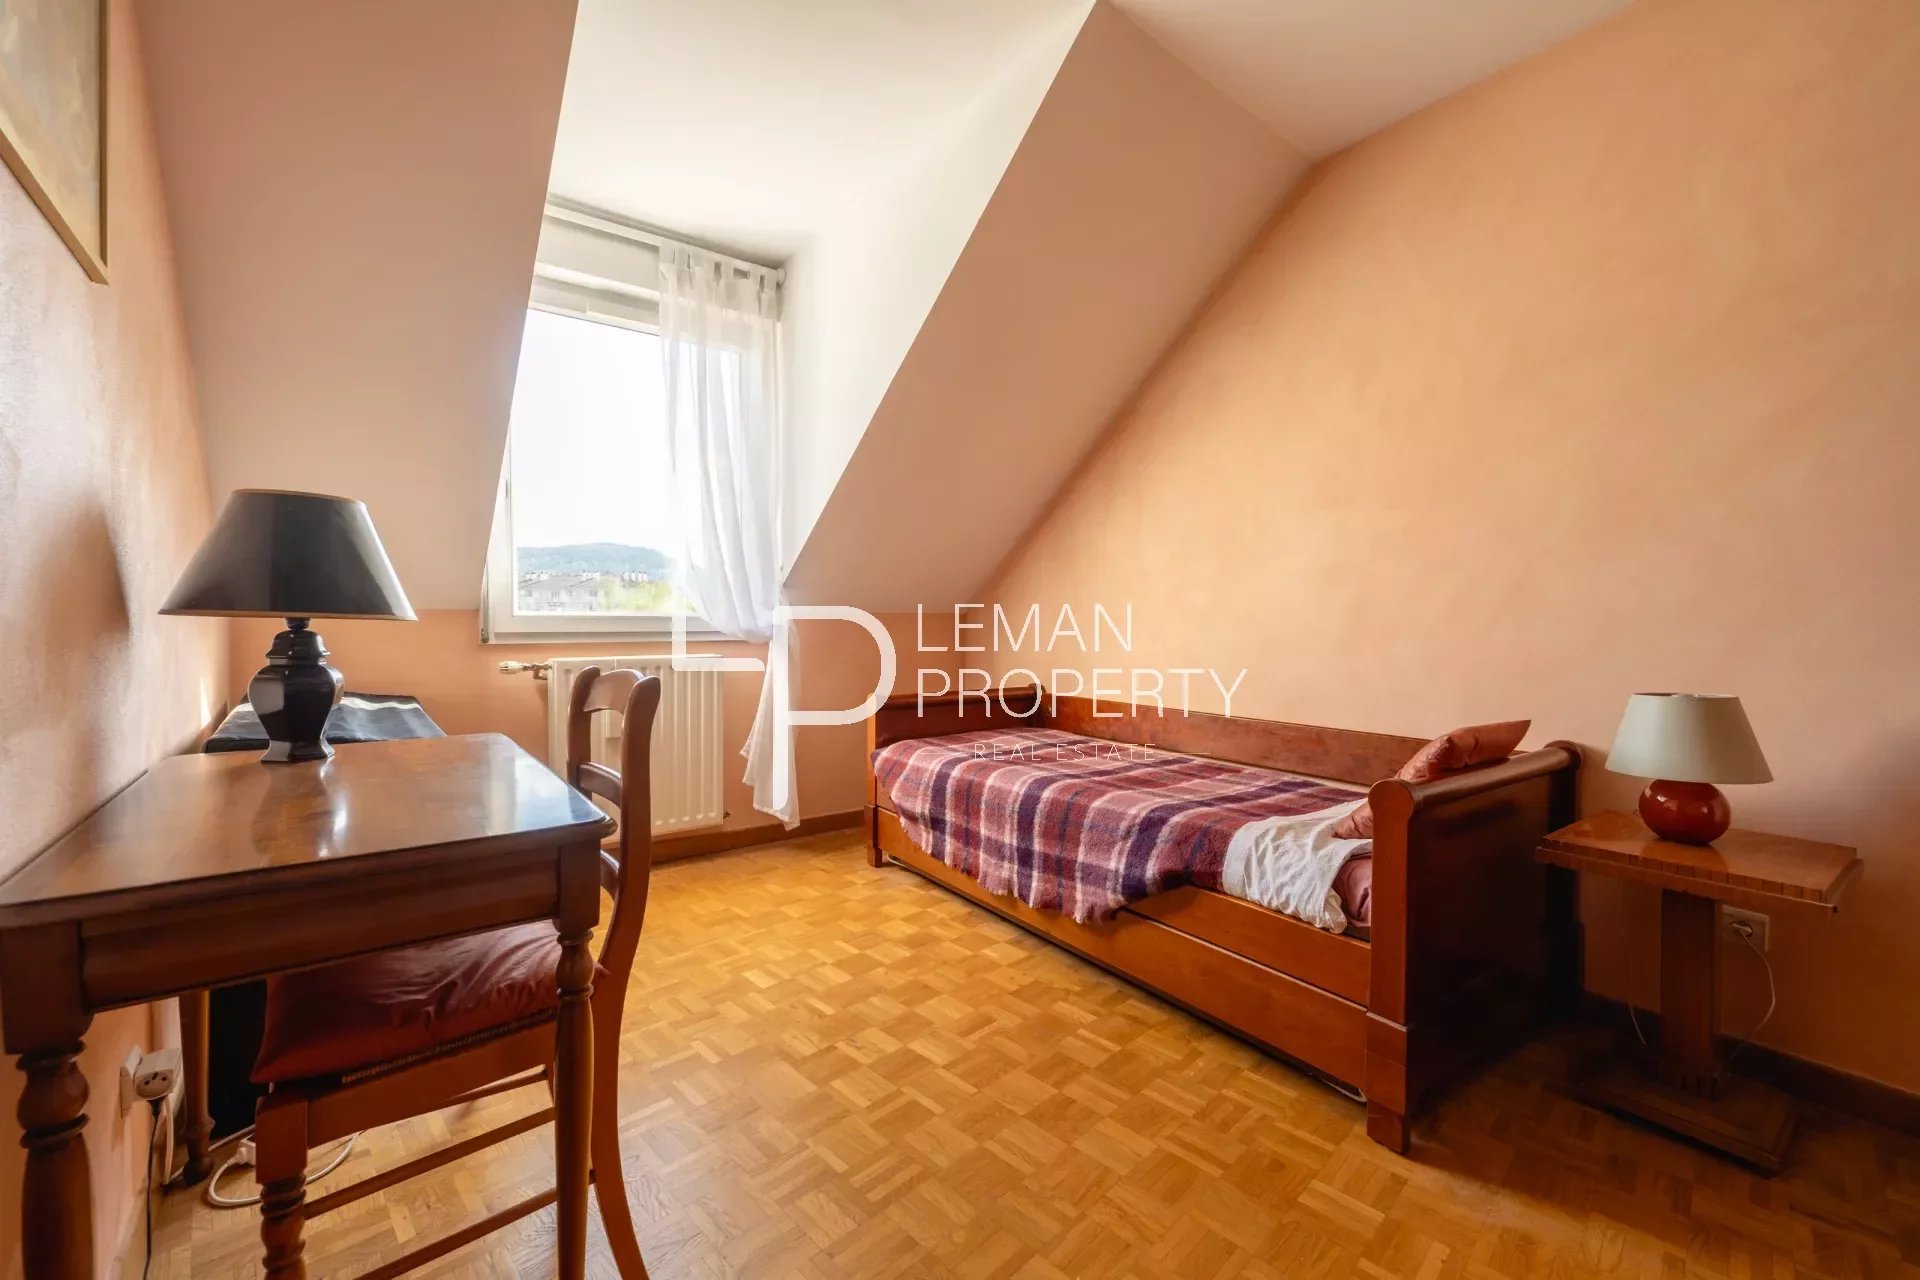 L'agence Leman property vous propose un appartement à la vente